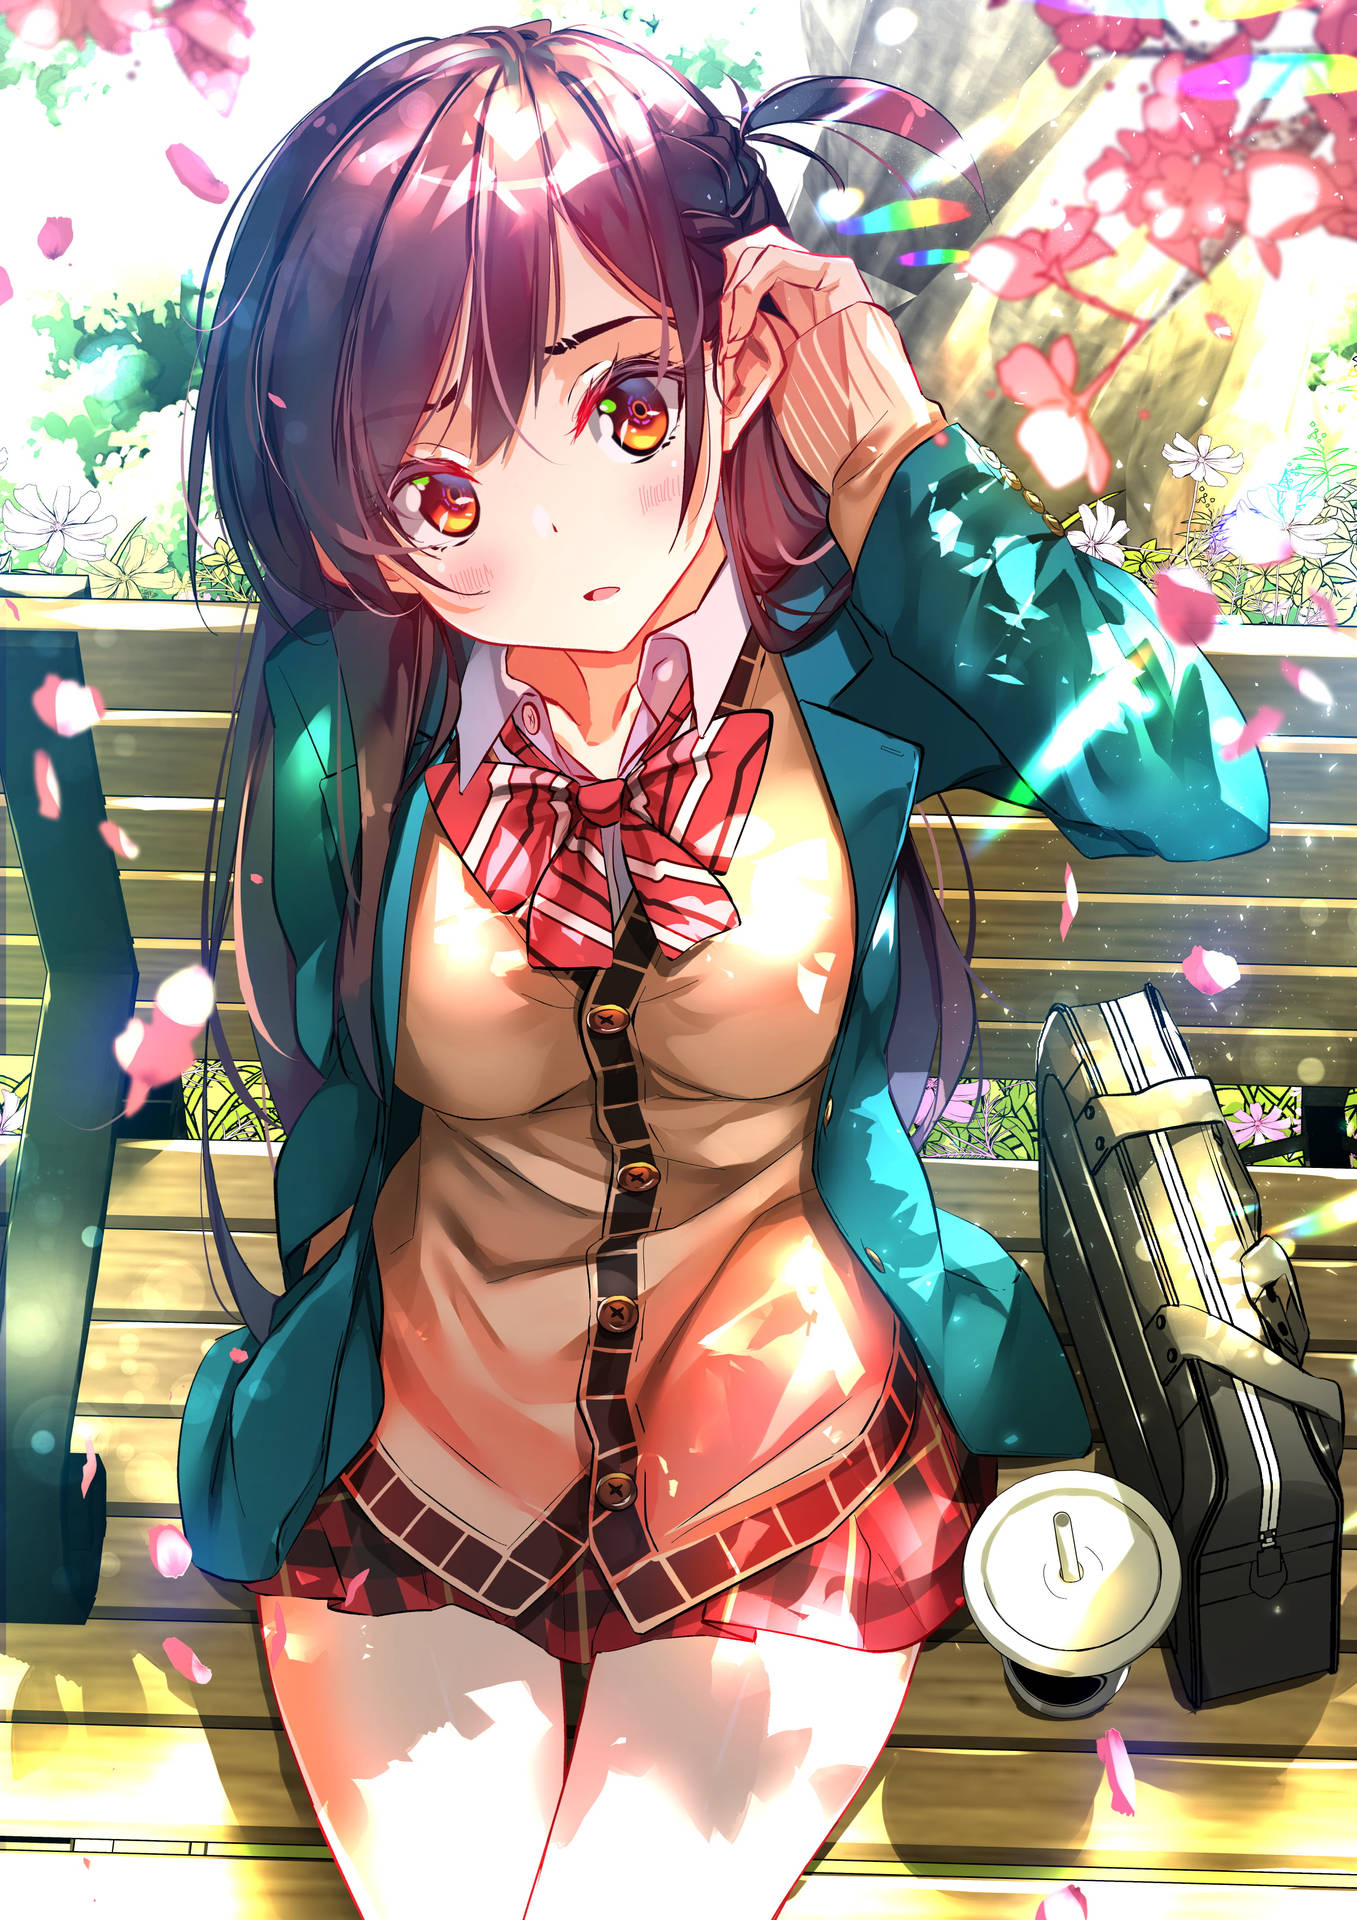 Rent A Girlfriend Chizuru On Uniform Background